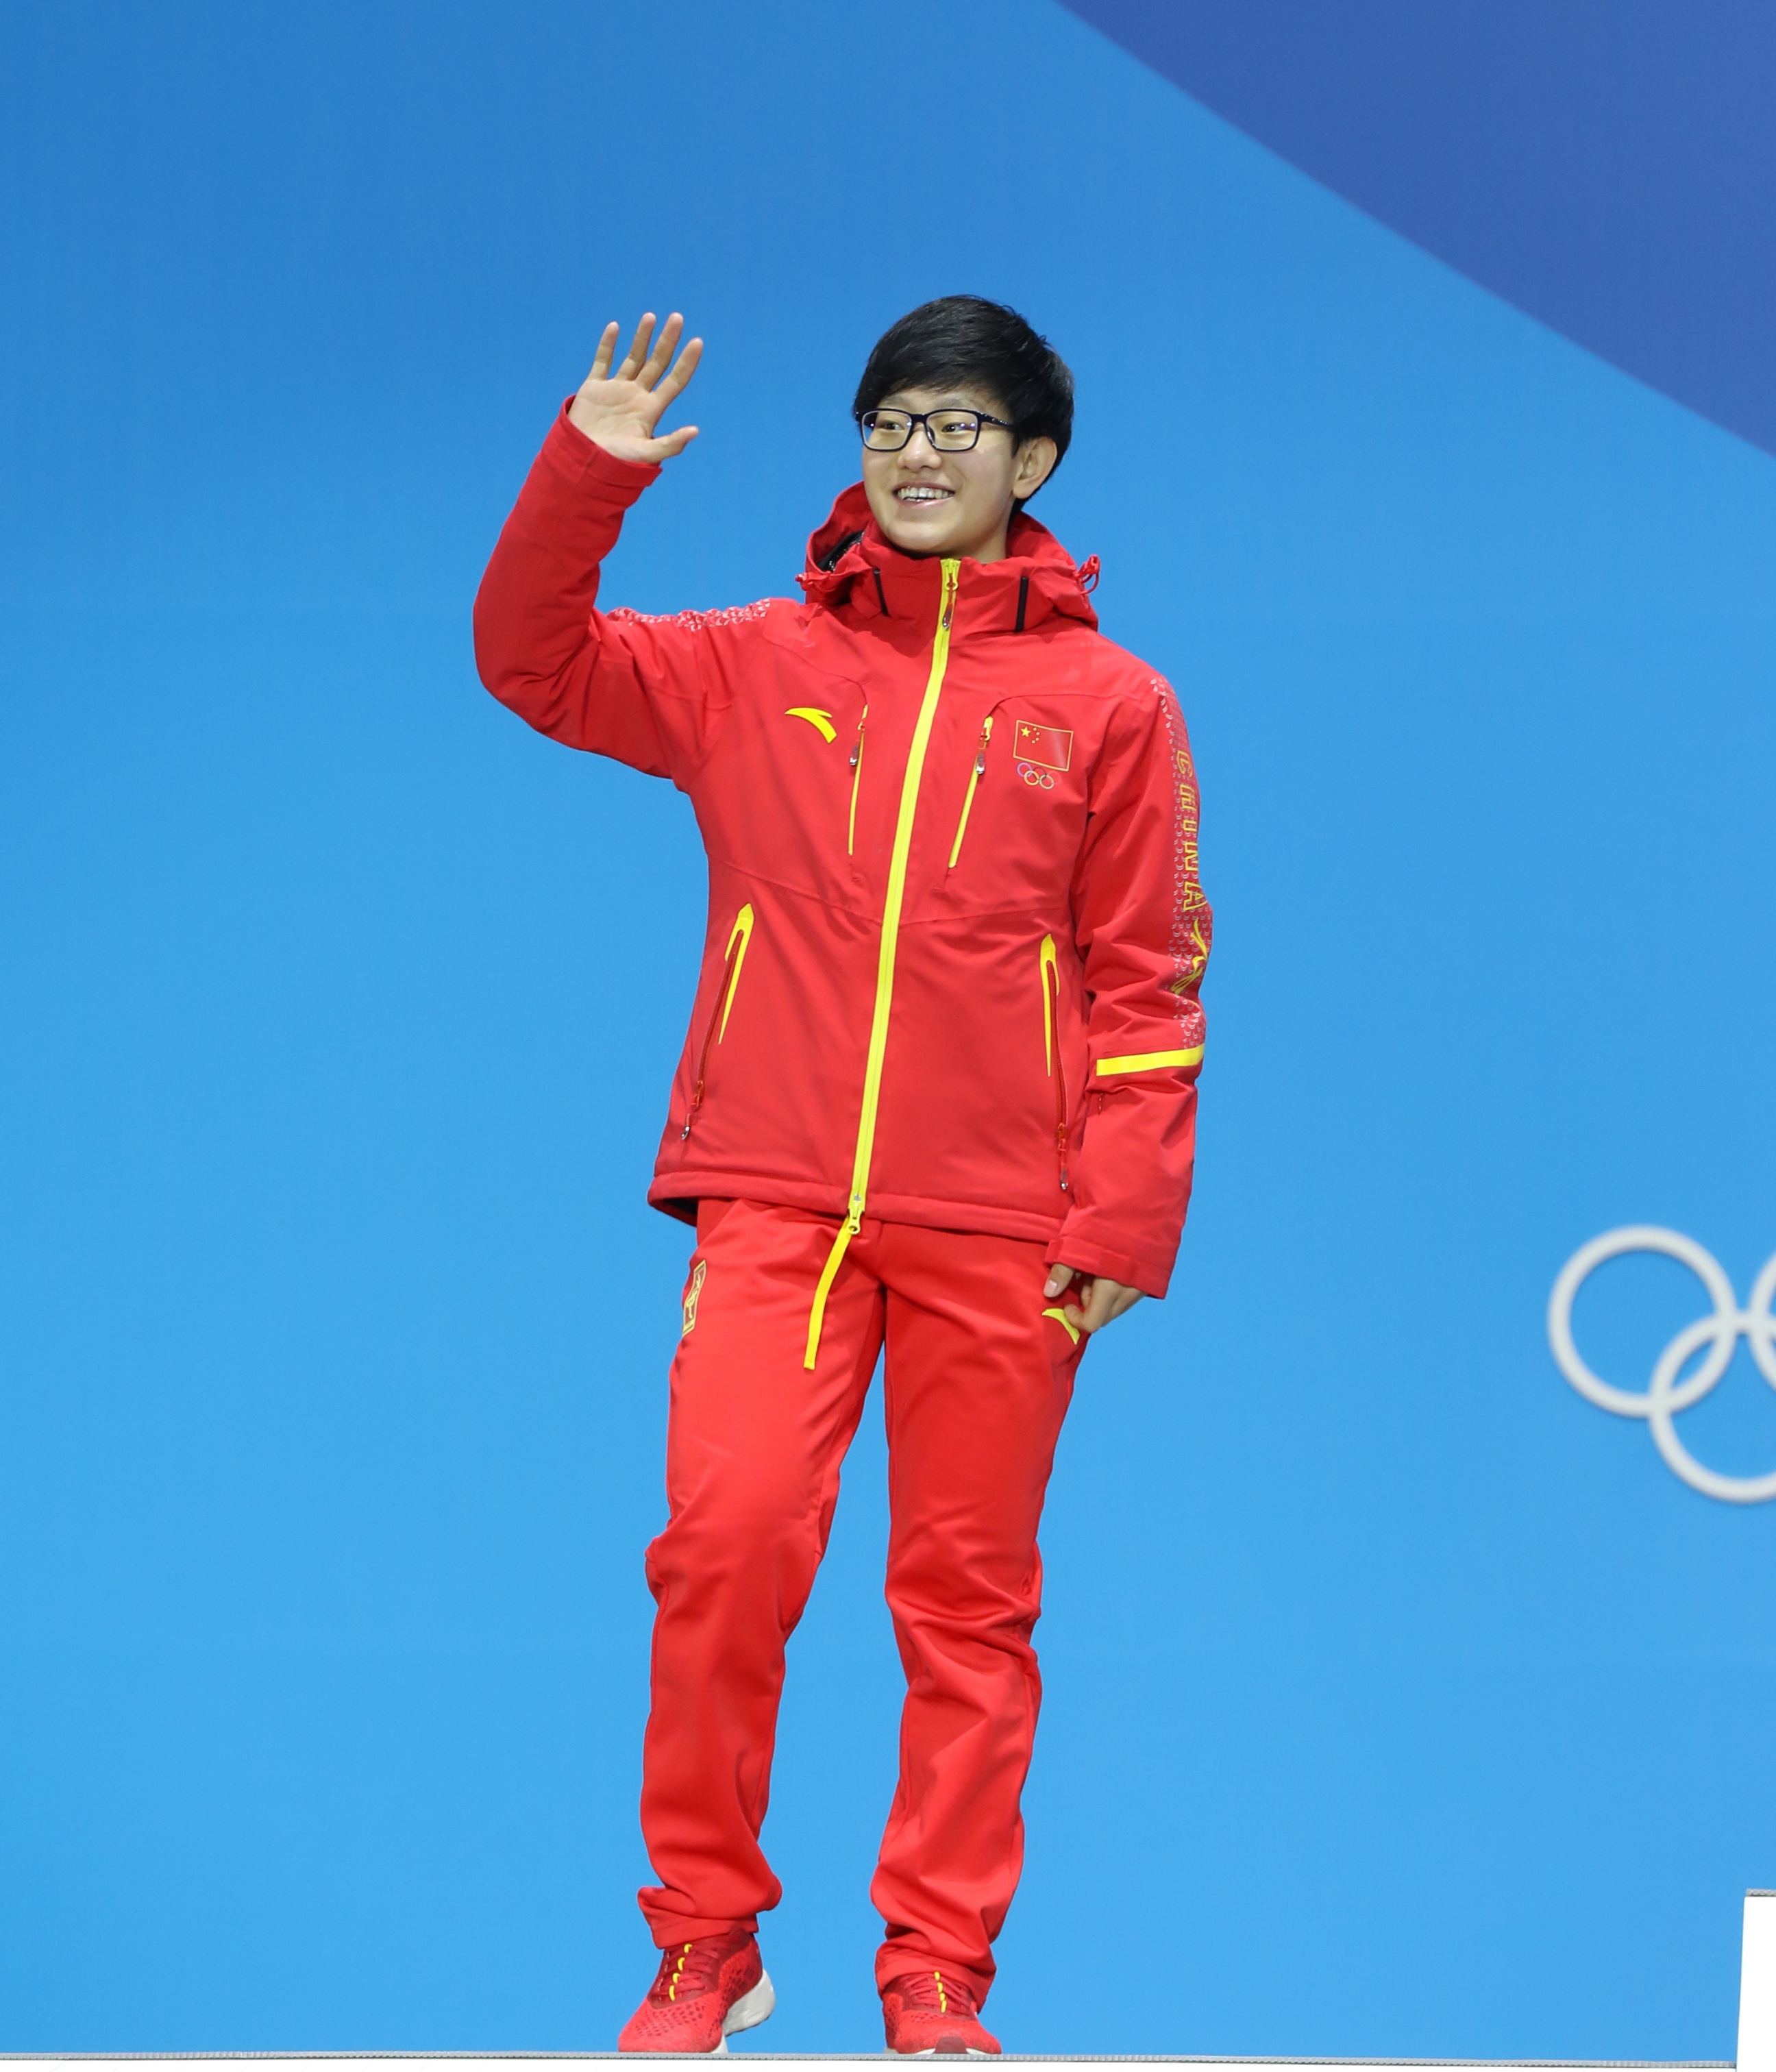 平昌冬奥会短道速滑女子1500米颁发奖牌仪式 李靳宇挂上银牌